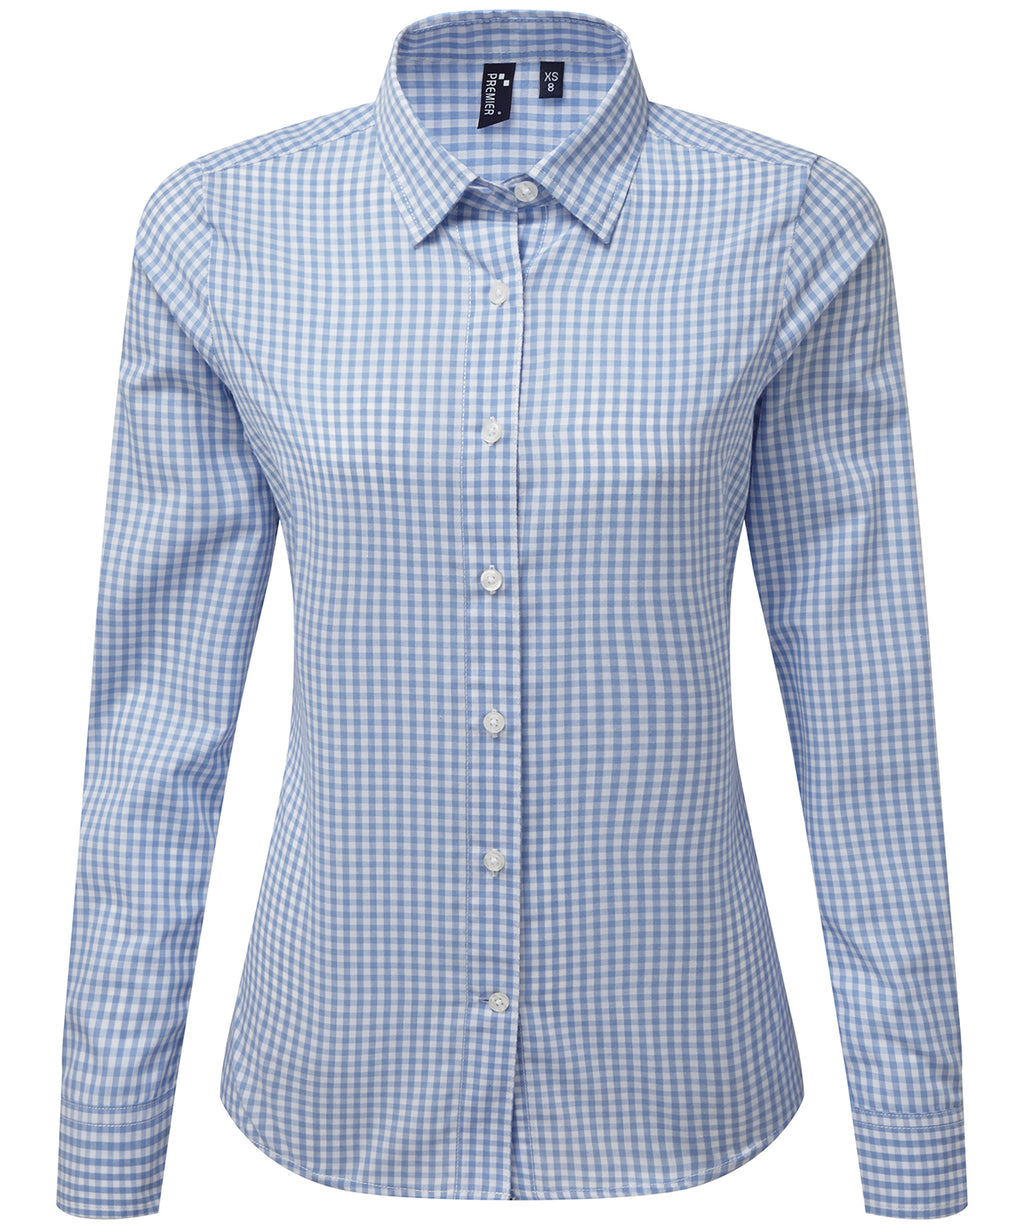 Womens Gingham Check Long Sleeve Shirt - Light Blue/White